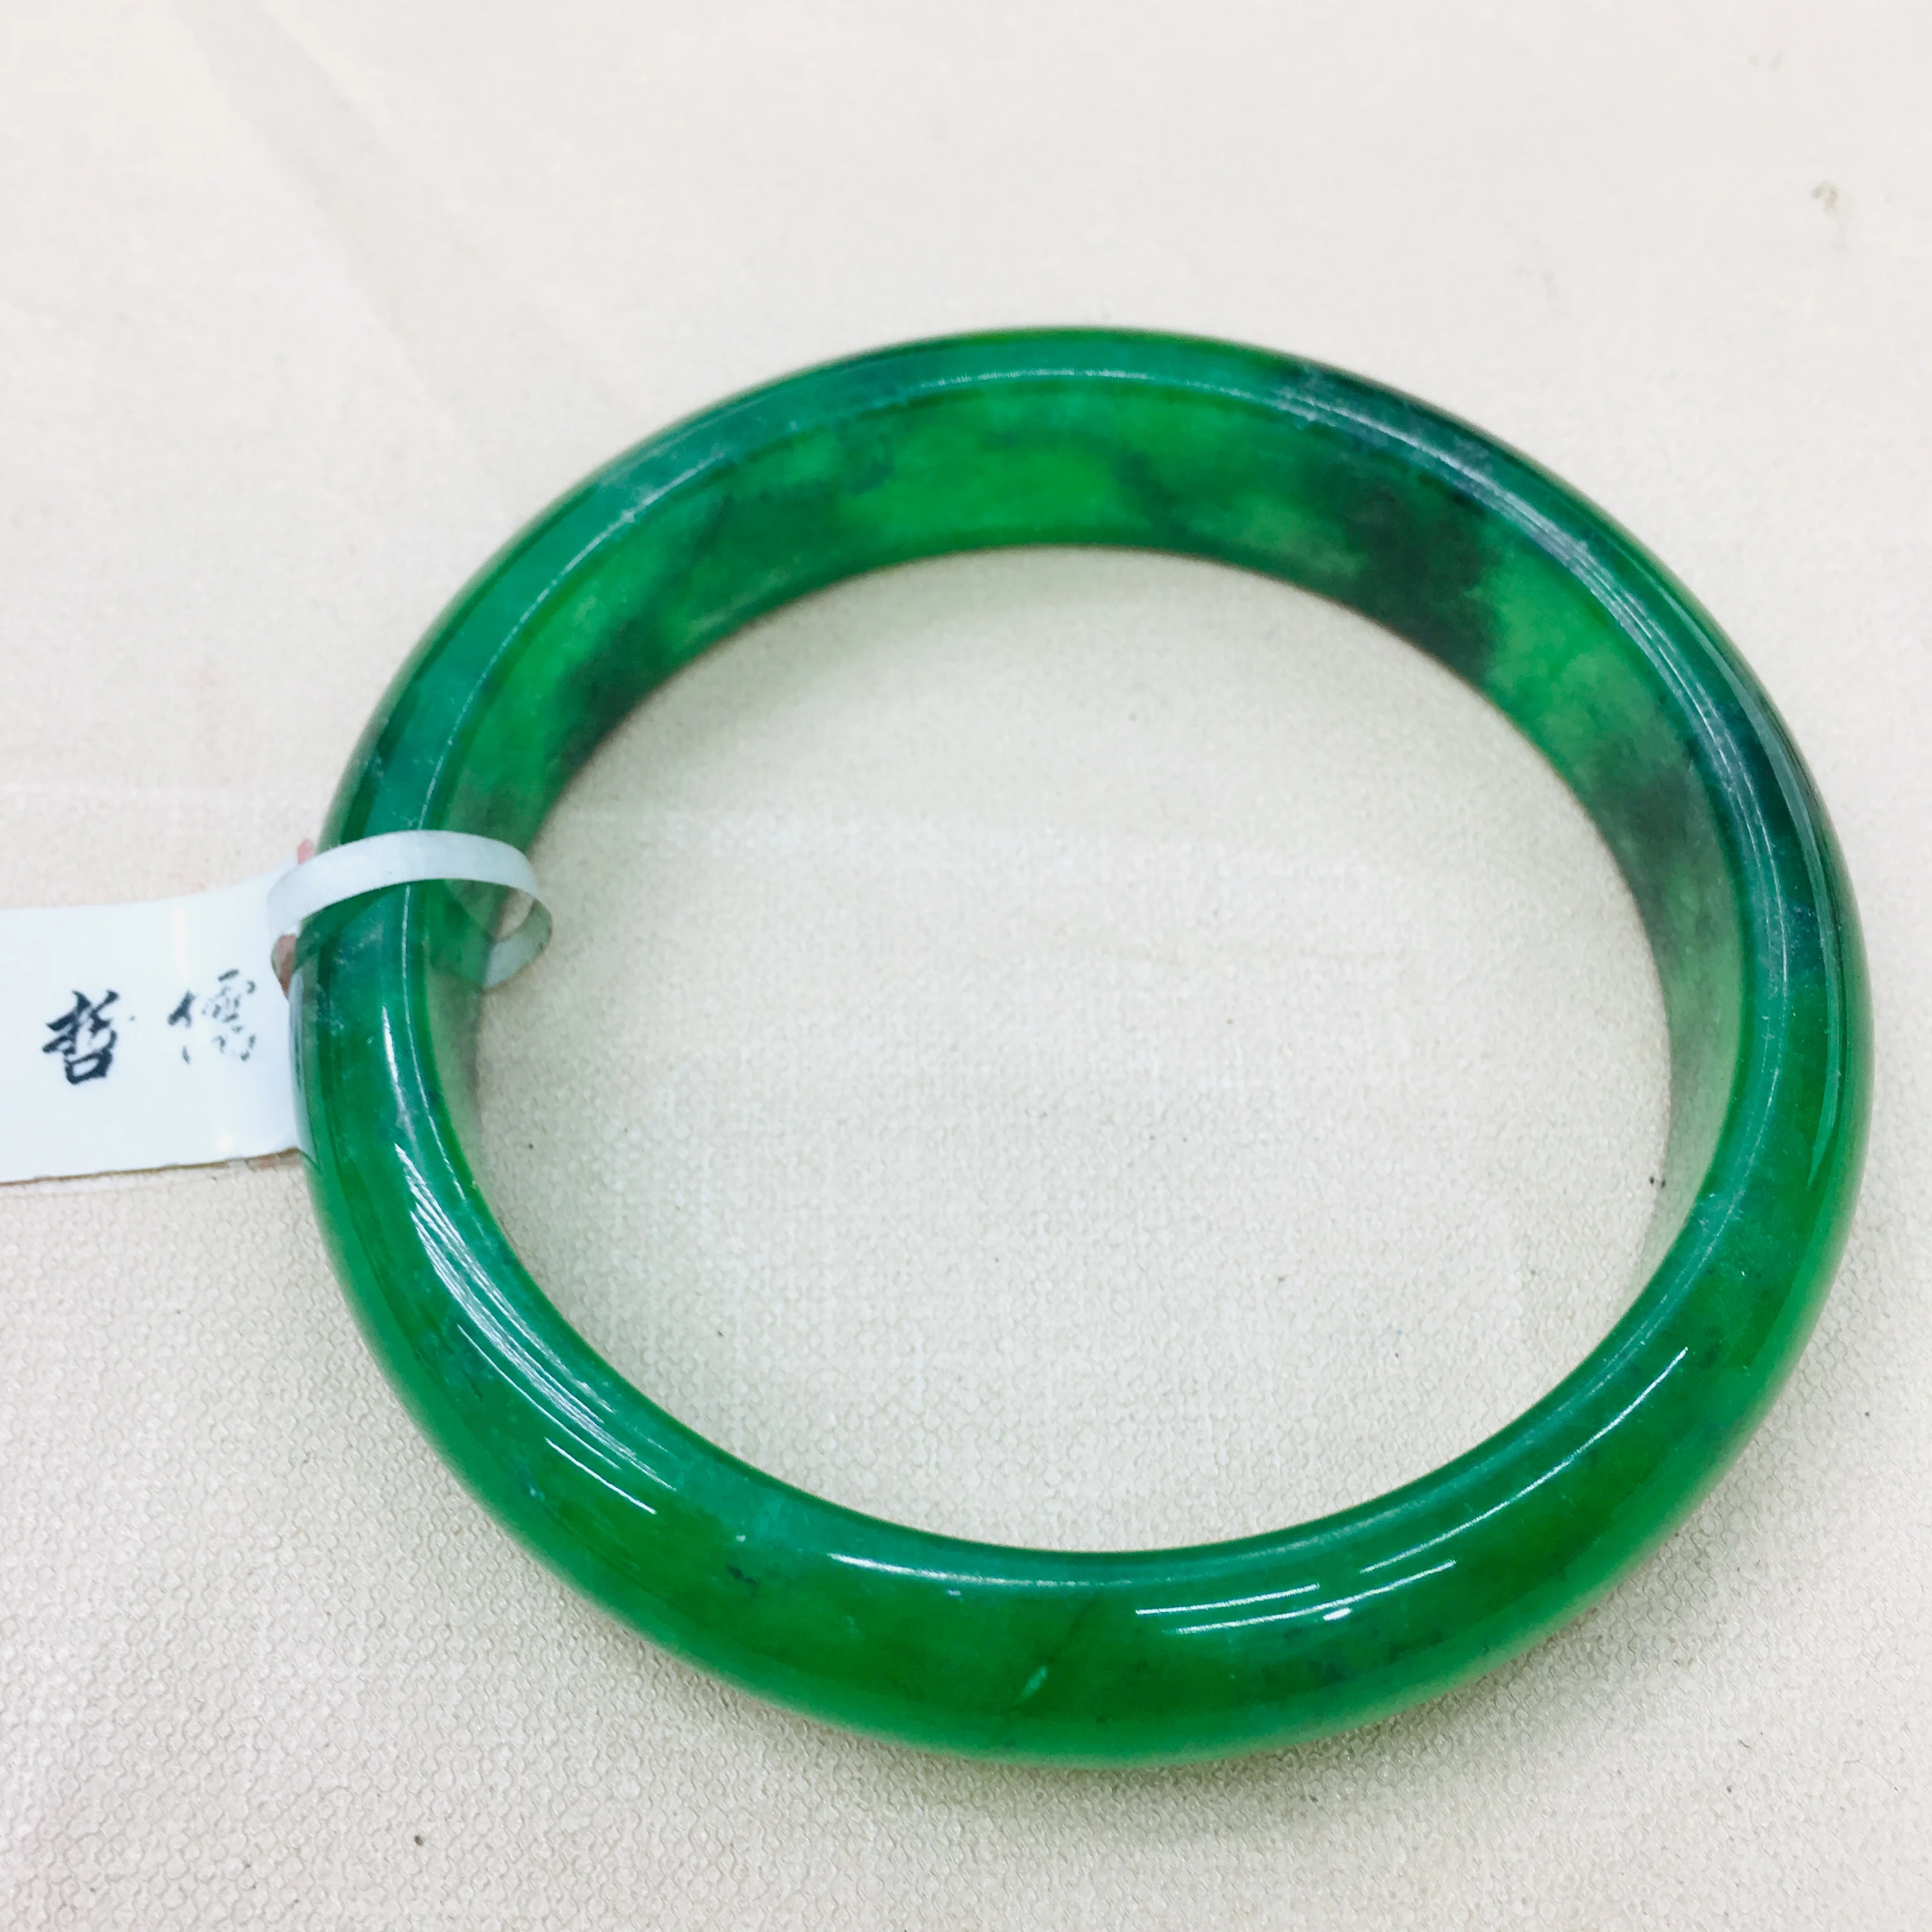 Натуральный бирманский Изумрудный нефрит элегантный 52-62 масло зеленый двойной цвет браслет принцесса женский нефритовый браслет отправить страну certify